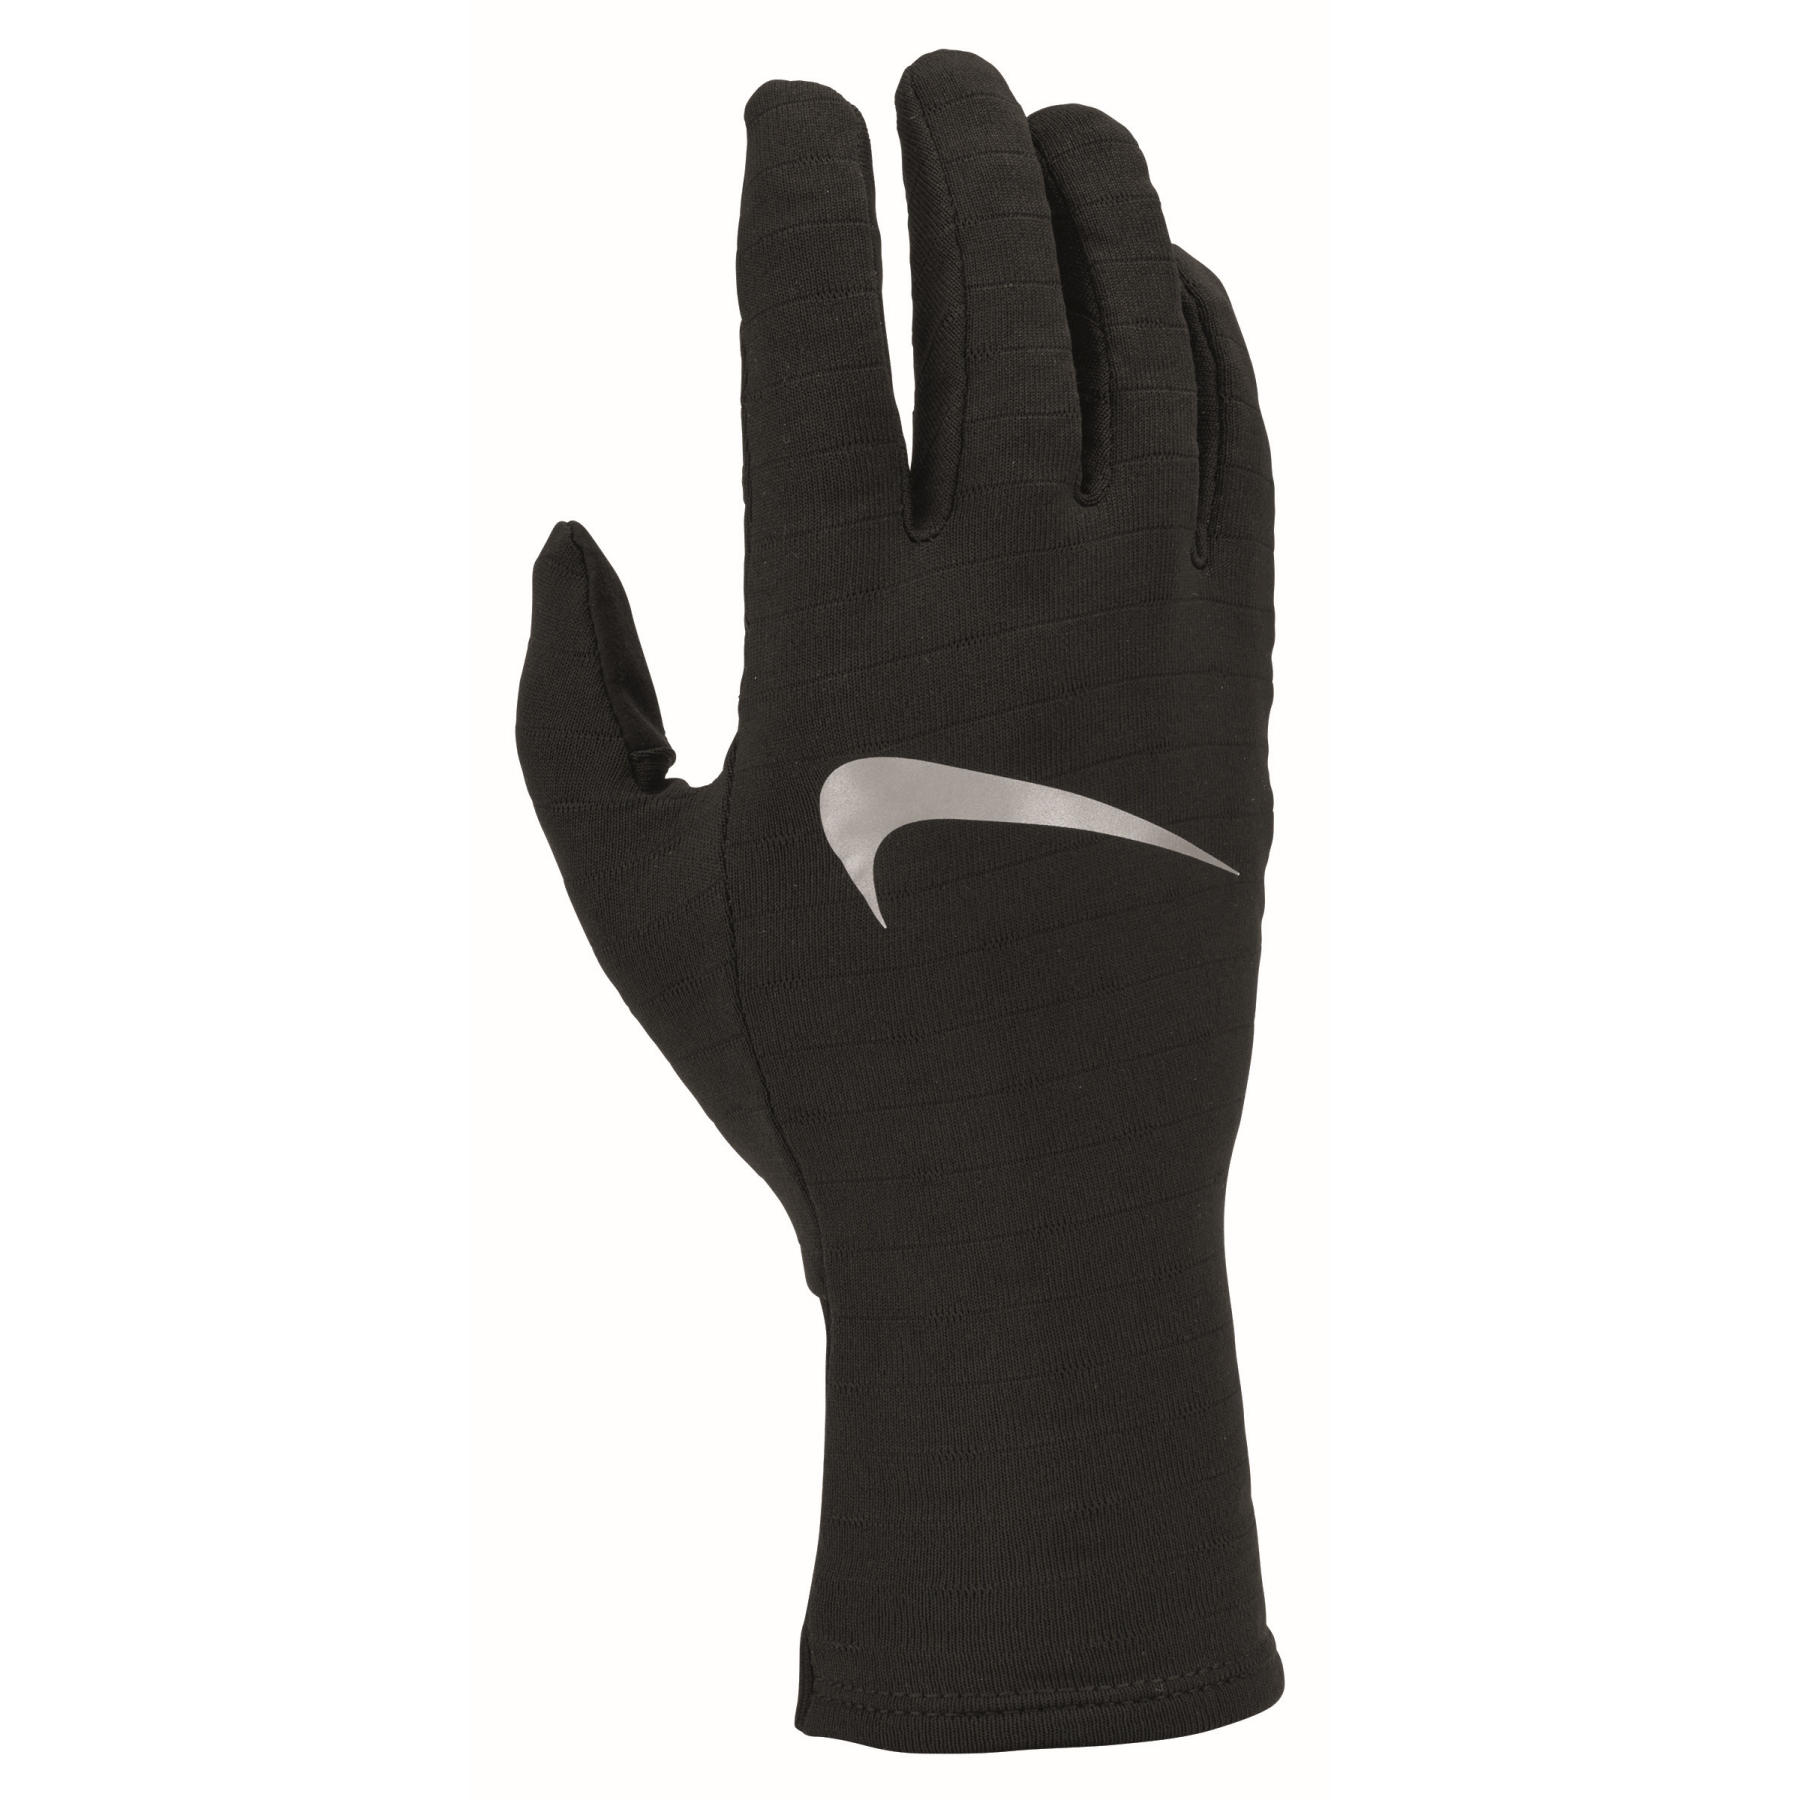 Produktbild von Nike Sphere 4.0 Herren Laufhandschuhe - schwarz/schwarz/silber 082